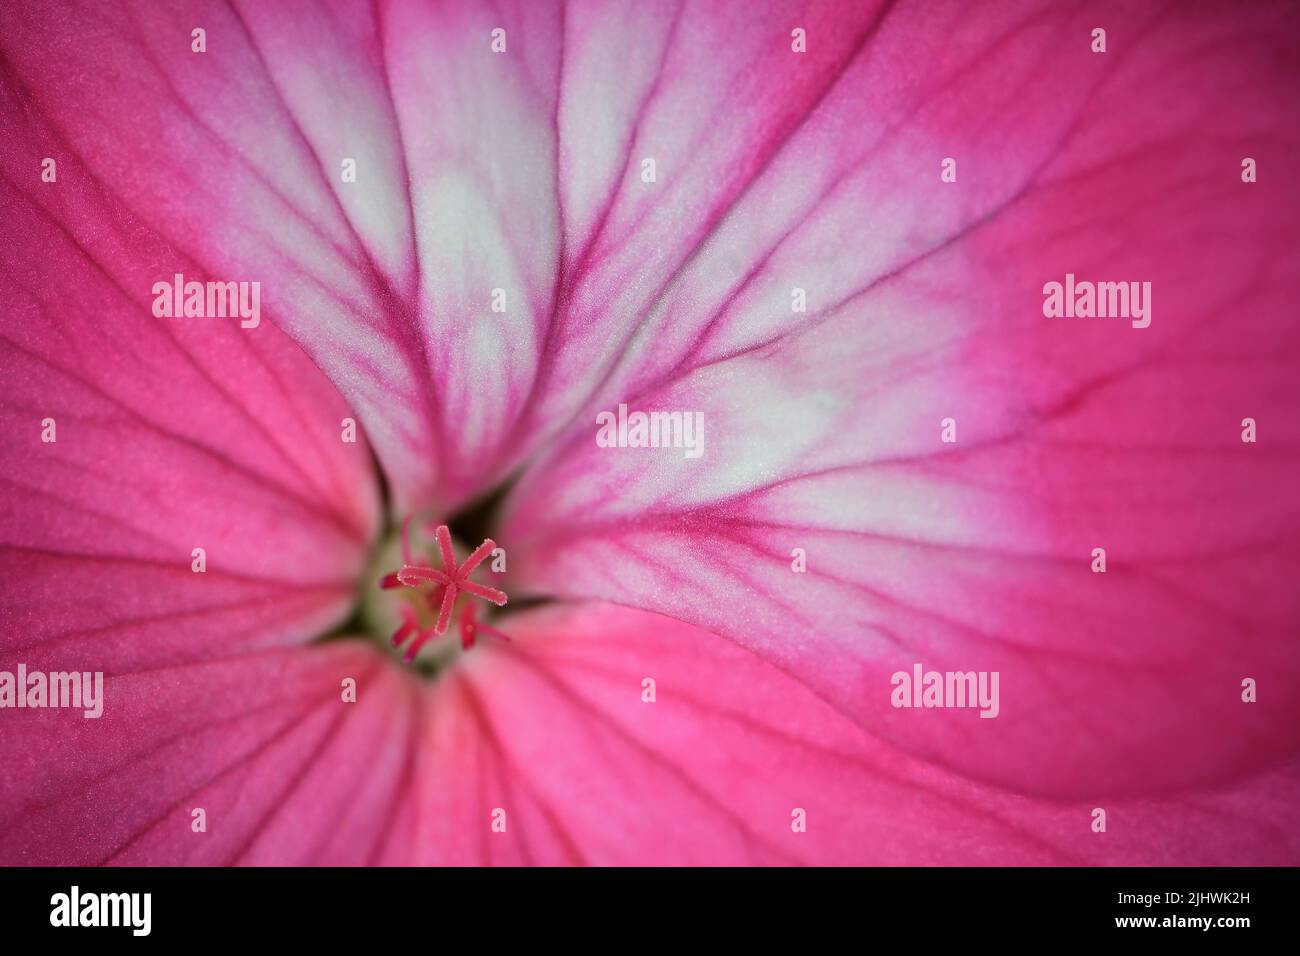 Un primo piano estremo di un vivace fiore rosa Geranium -Geranium pelargonium x hotorum- in un'illuminazione soffusa e d'atmosfera, catturato in uno Studio Foto Stock